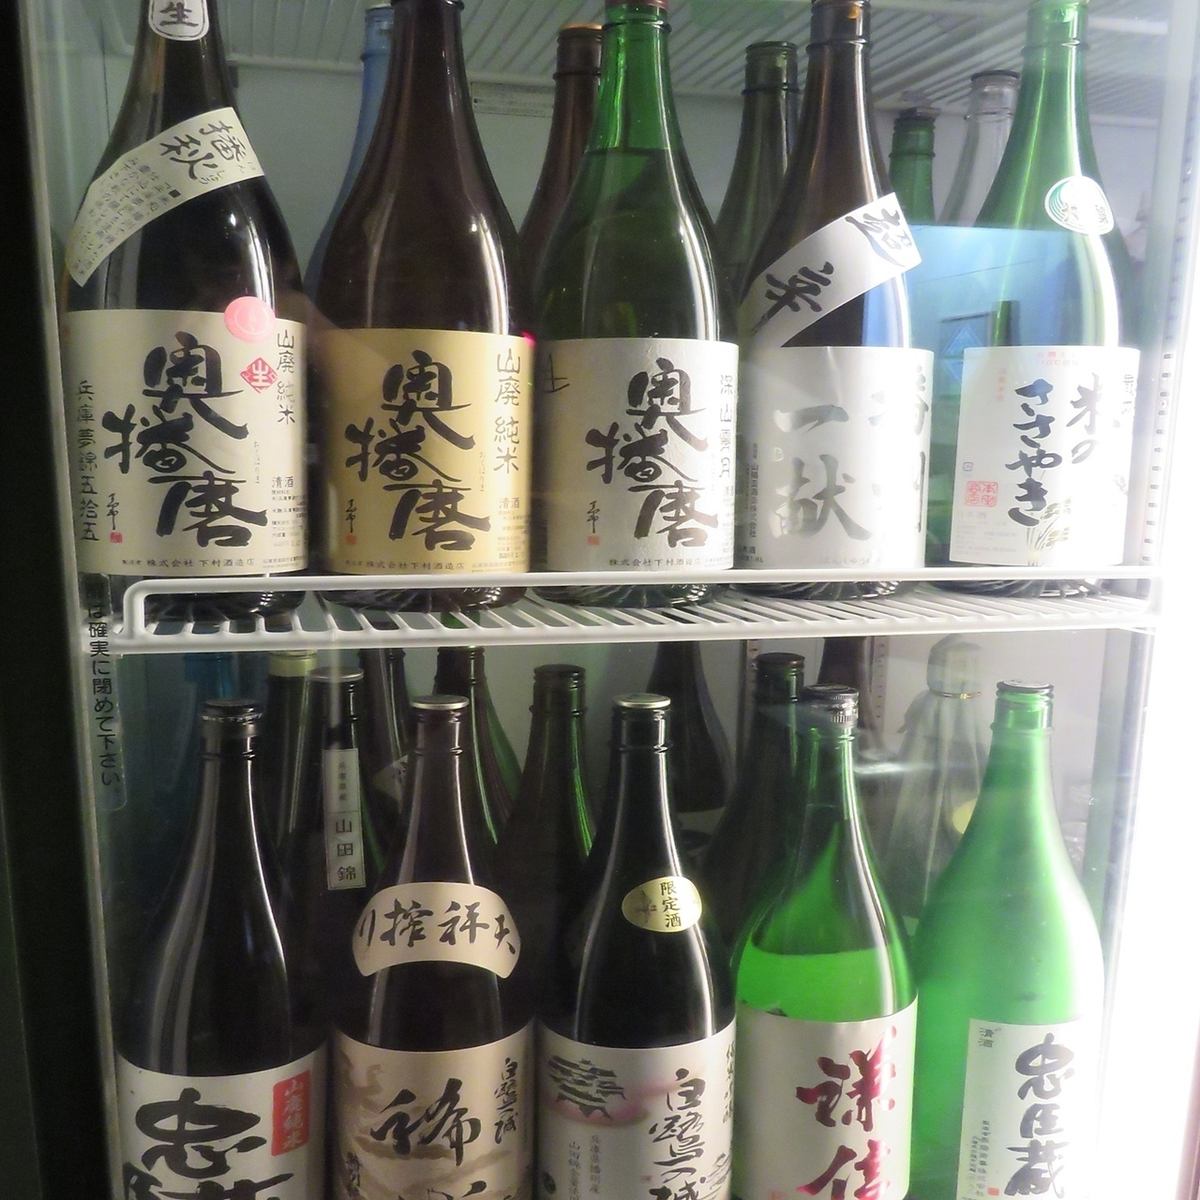 日本酒和烧酒的种类丰富♪